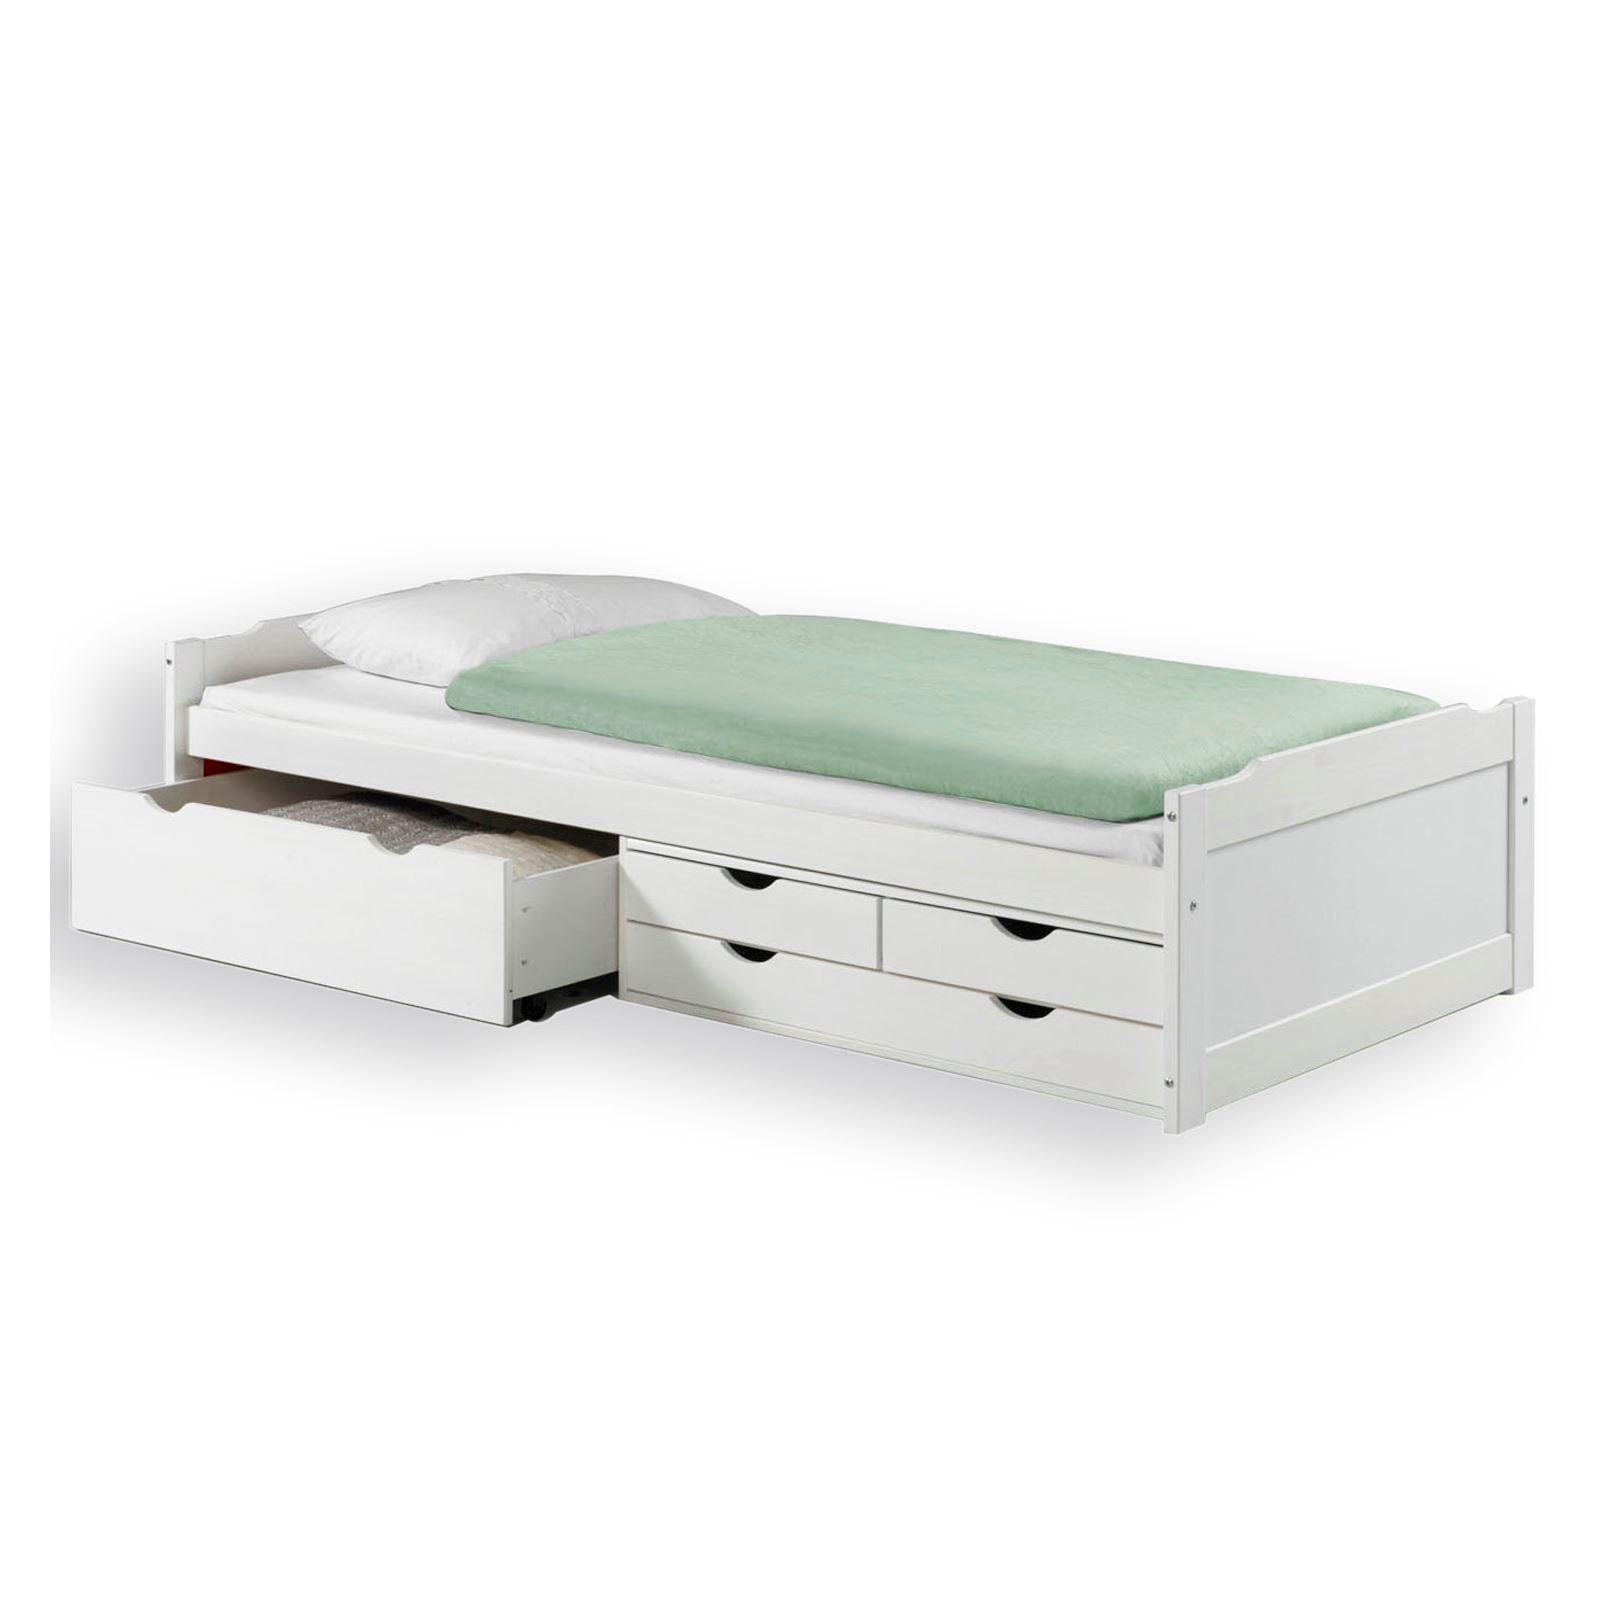 IDIMEX Funktionsbett ANDREA, Bett mit Stauraum Bett in weiss mit 4 Schubladen aus Kiefer massiv Hol weiß